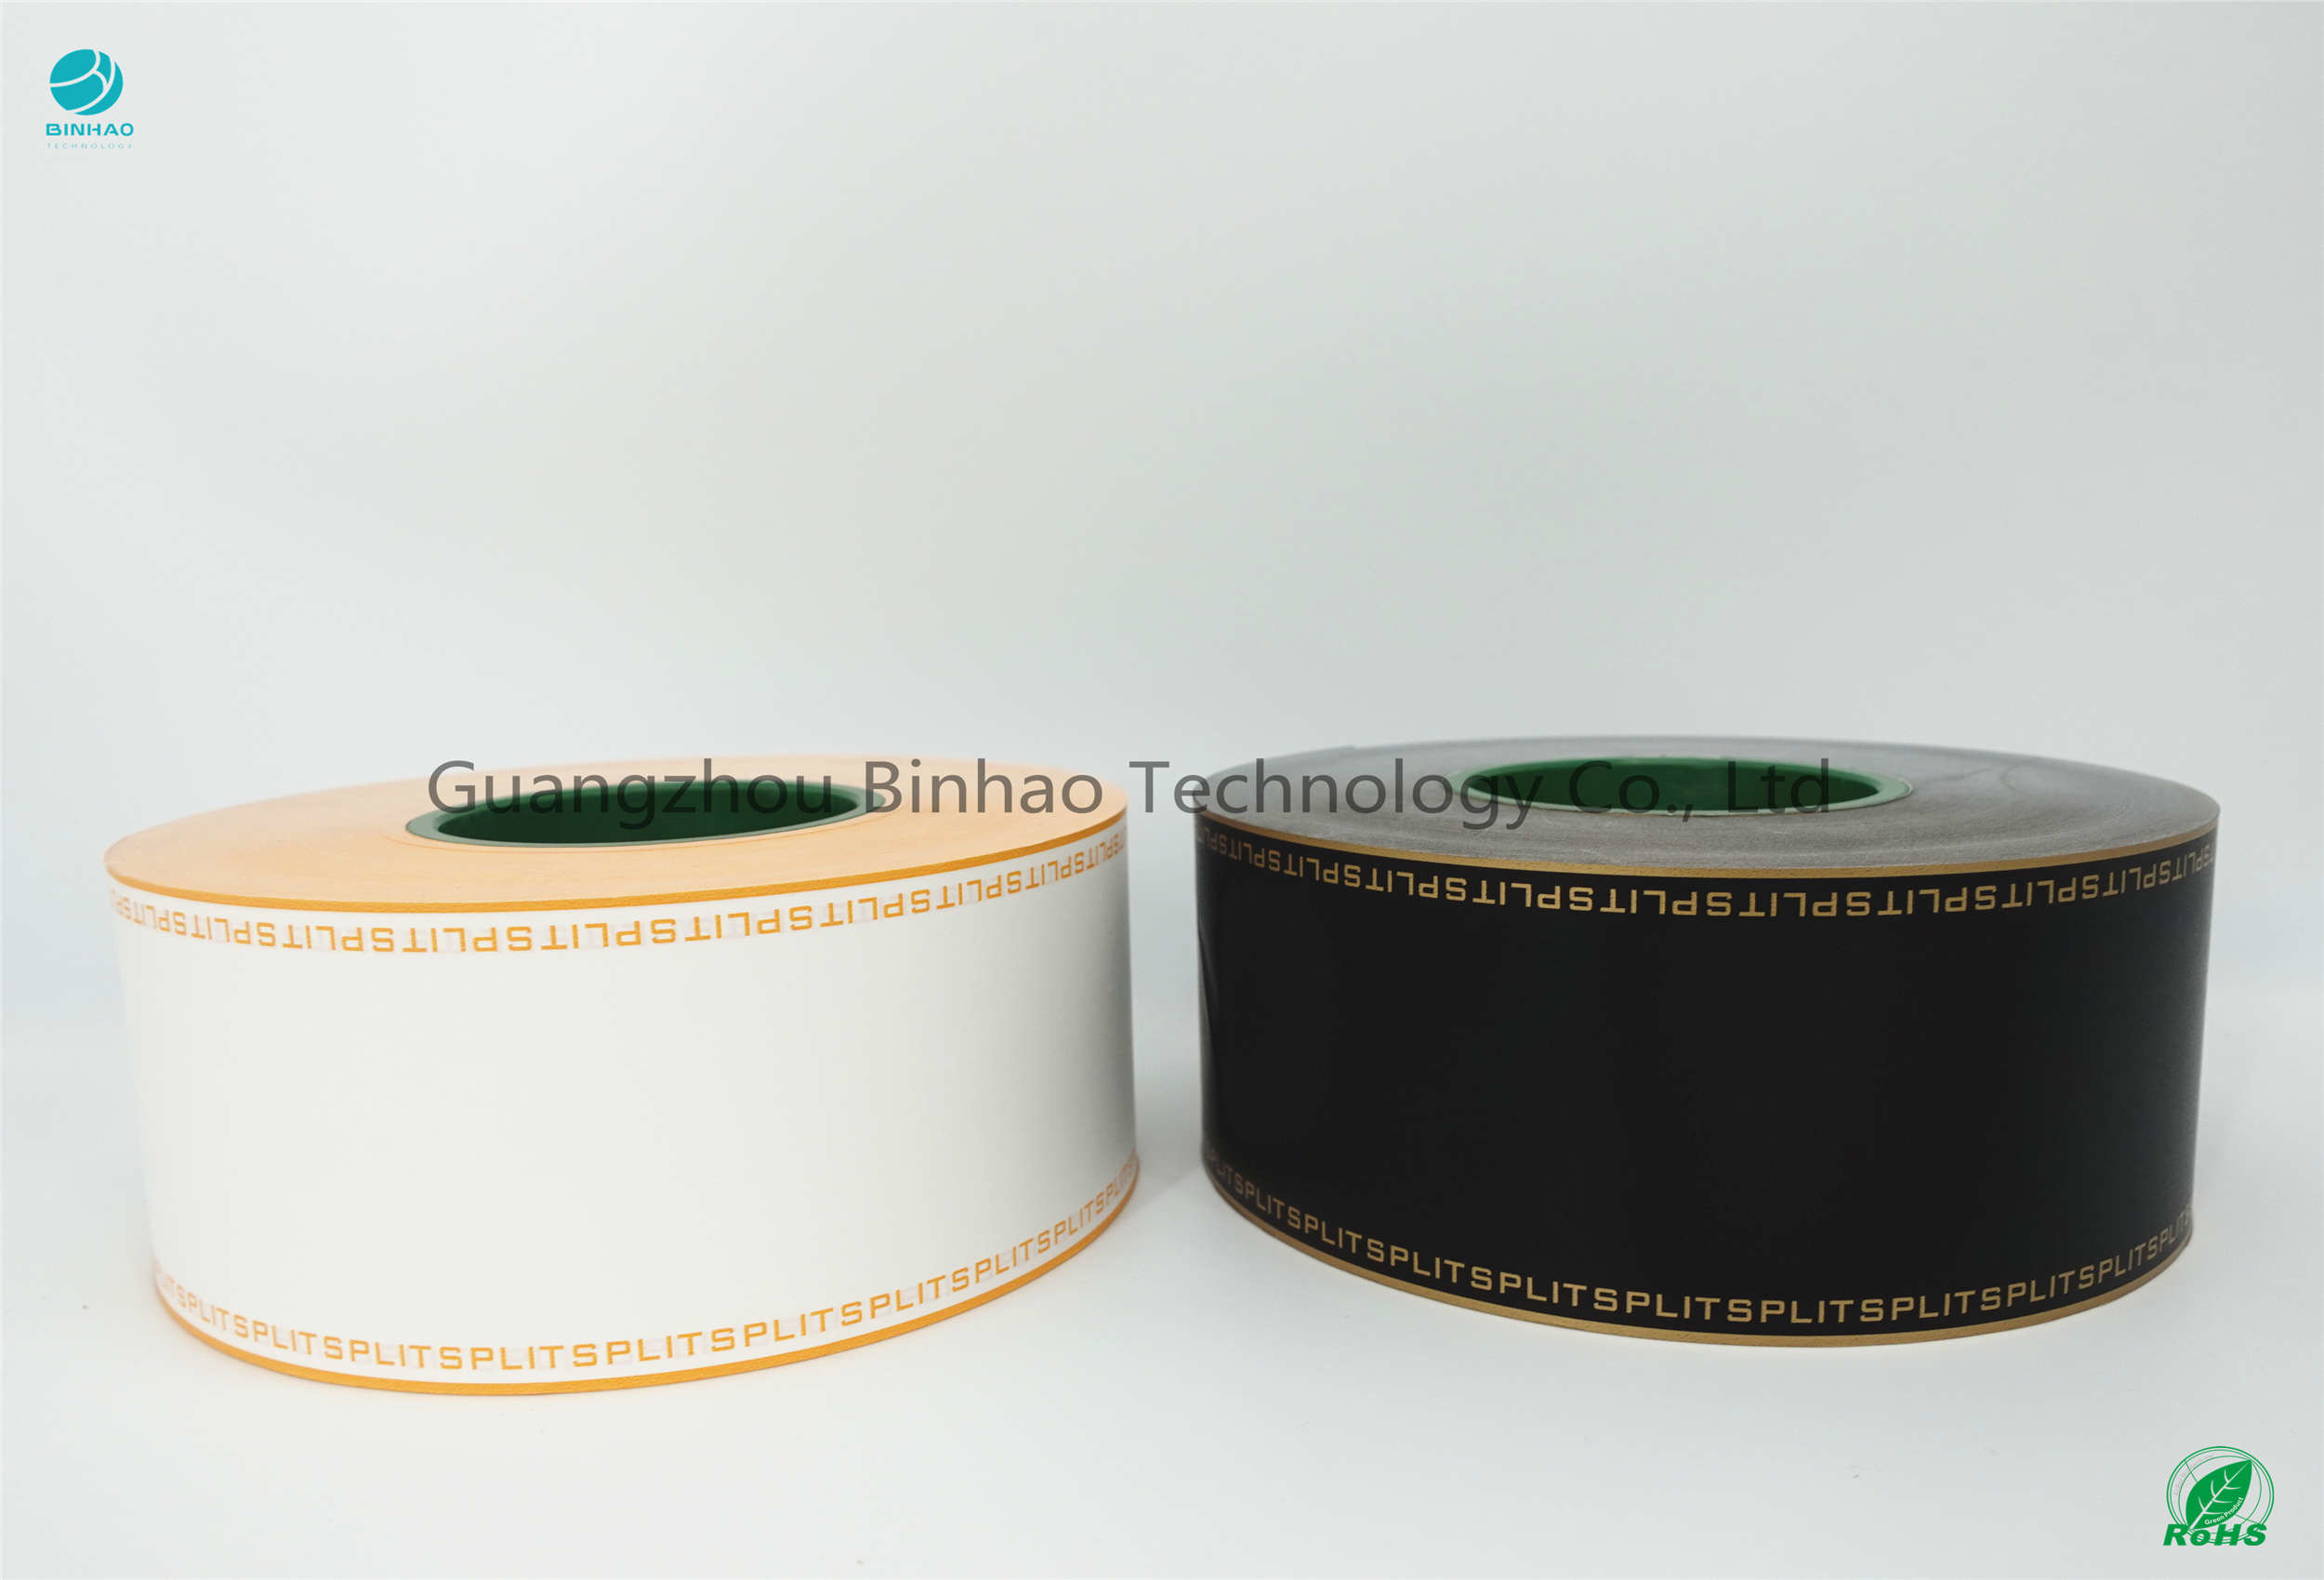 Matériaux Superslim brillants de paquet de taille de l'huile 70mm de papier filtre de tabac